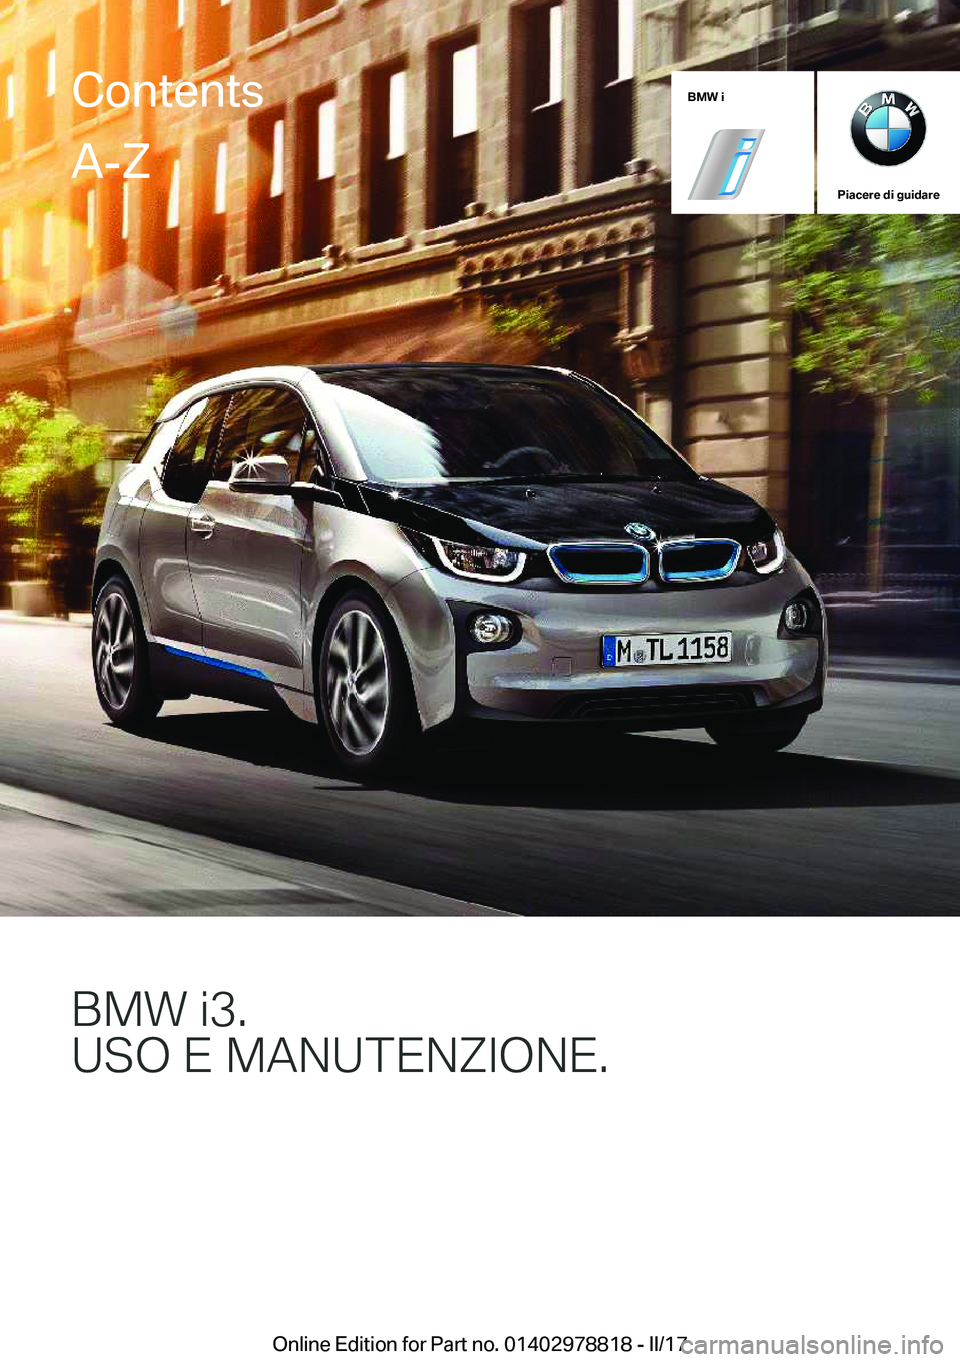 BMW I3 2017  Libretti Di Uso E manutenzione (in Italian) �B�M�W��i
�P�i�a�c�e�r�e��d�i��g�u�i�d�a�r�e
�B�M�8��J��
�U�S�O��&��M�A�N�U�T�&�N�;�*�O�N�&�
�C�o�n�t�e�n�t�s�A�-�Z
�O�n�l�i�n�e� �E�d�i�t�i�o�n� �f�o�r� �P�a�r�t� �n�o�.� �0�1�4�0�2�9�7�8�8�